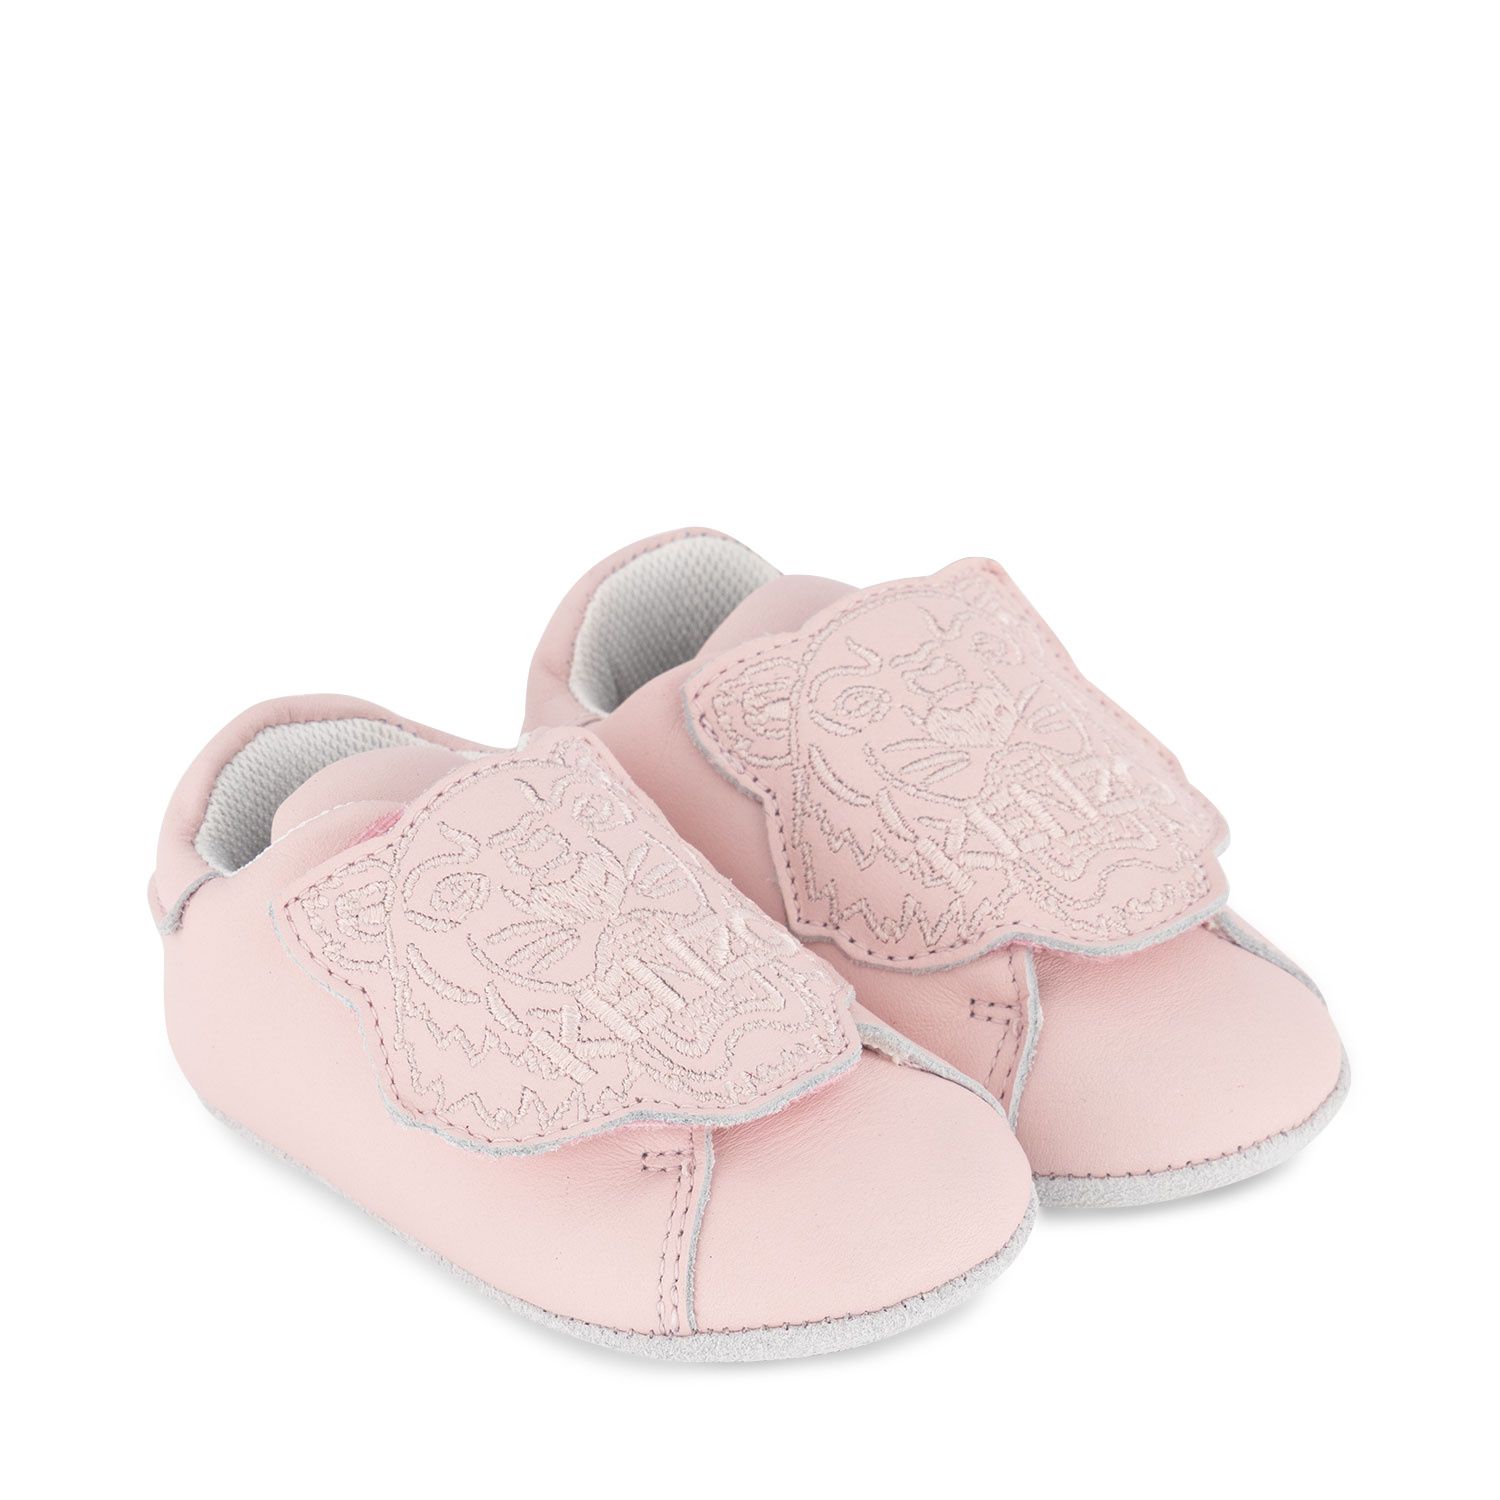 Afbeelding van Kenzo K99005 babyschoenen licht roze